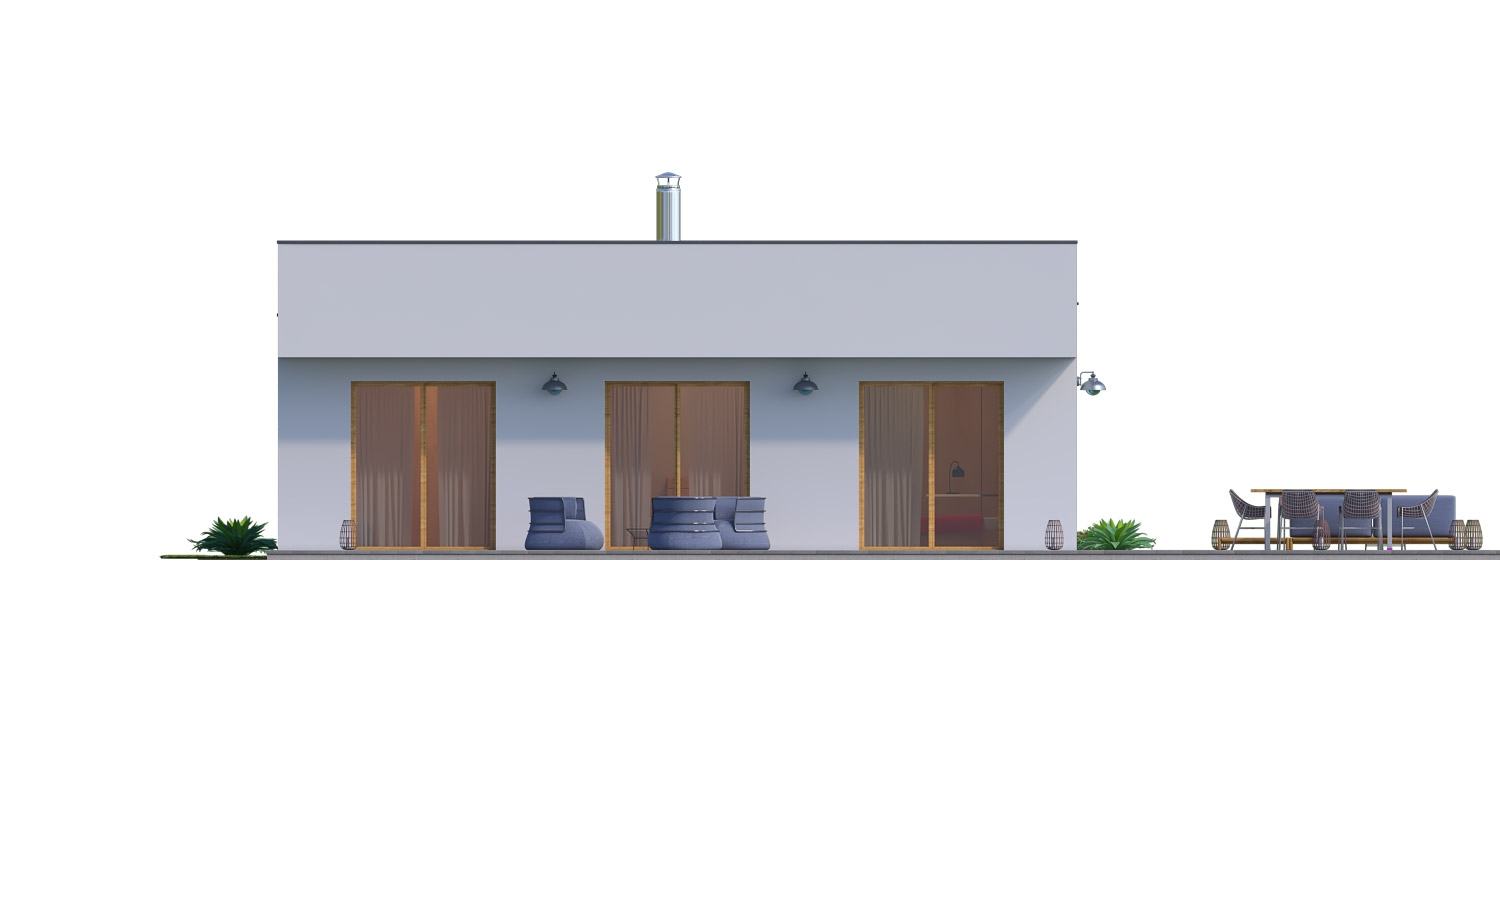 Zrkadlový pohľad 4. - Moderní 4-pokojový zděný rodinný dům s plochou střechou. Možnost realizace s valbovou nebo sedlovou střechou.